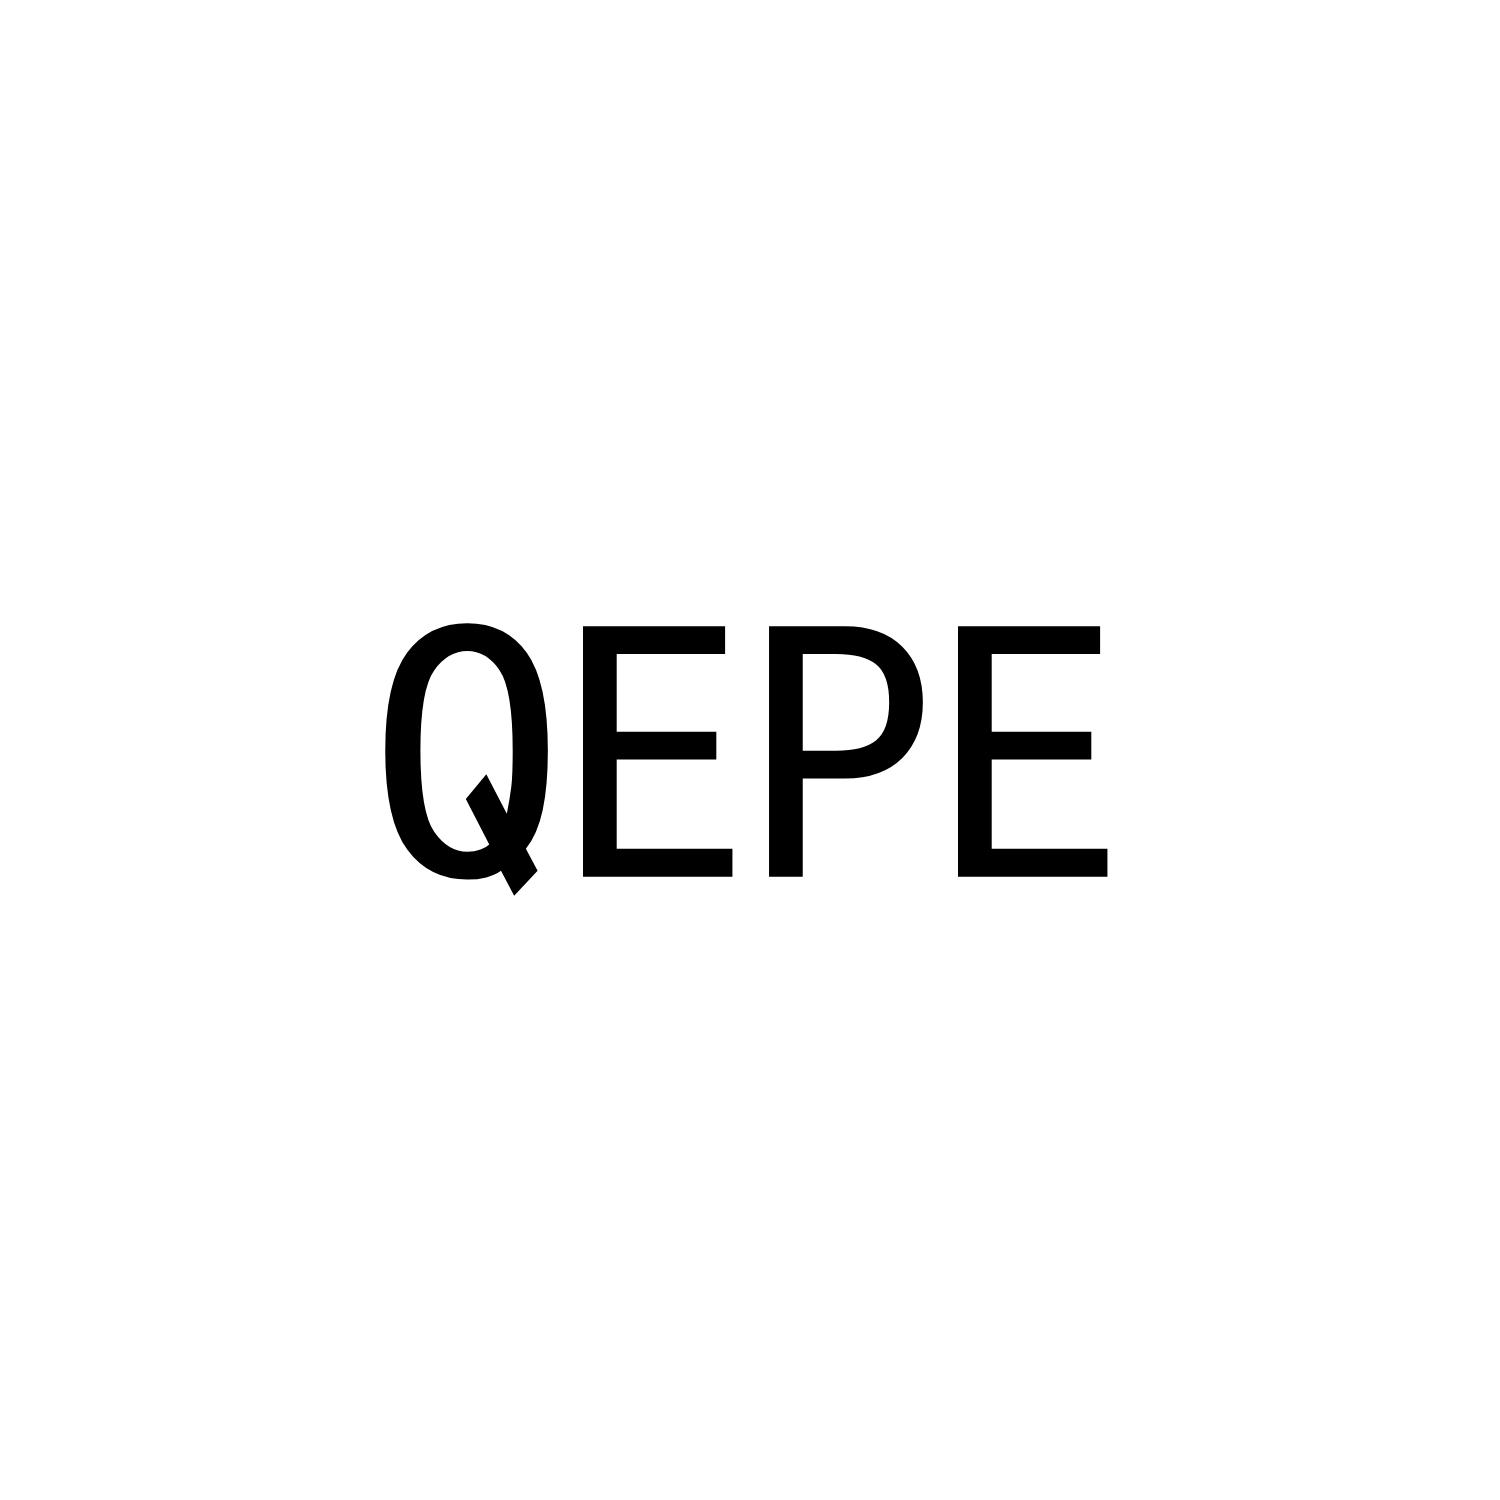 QEPE